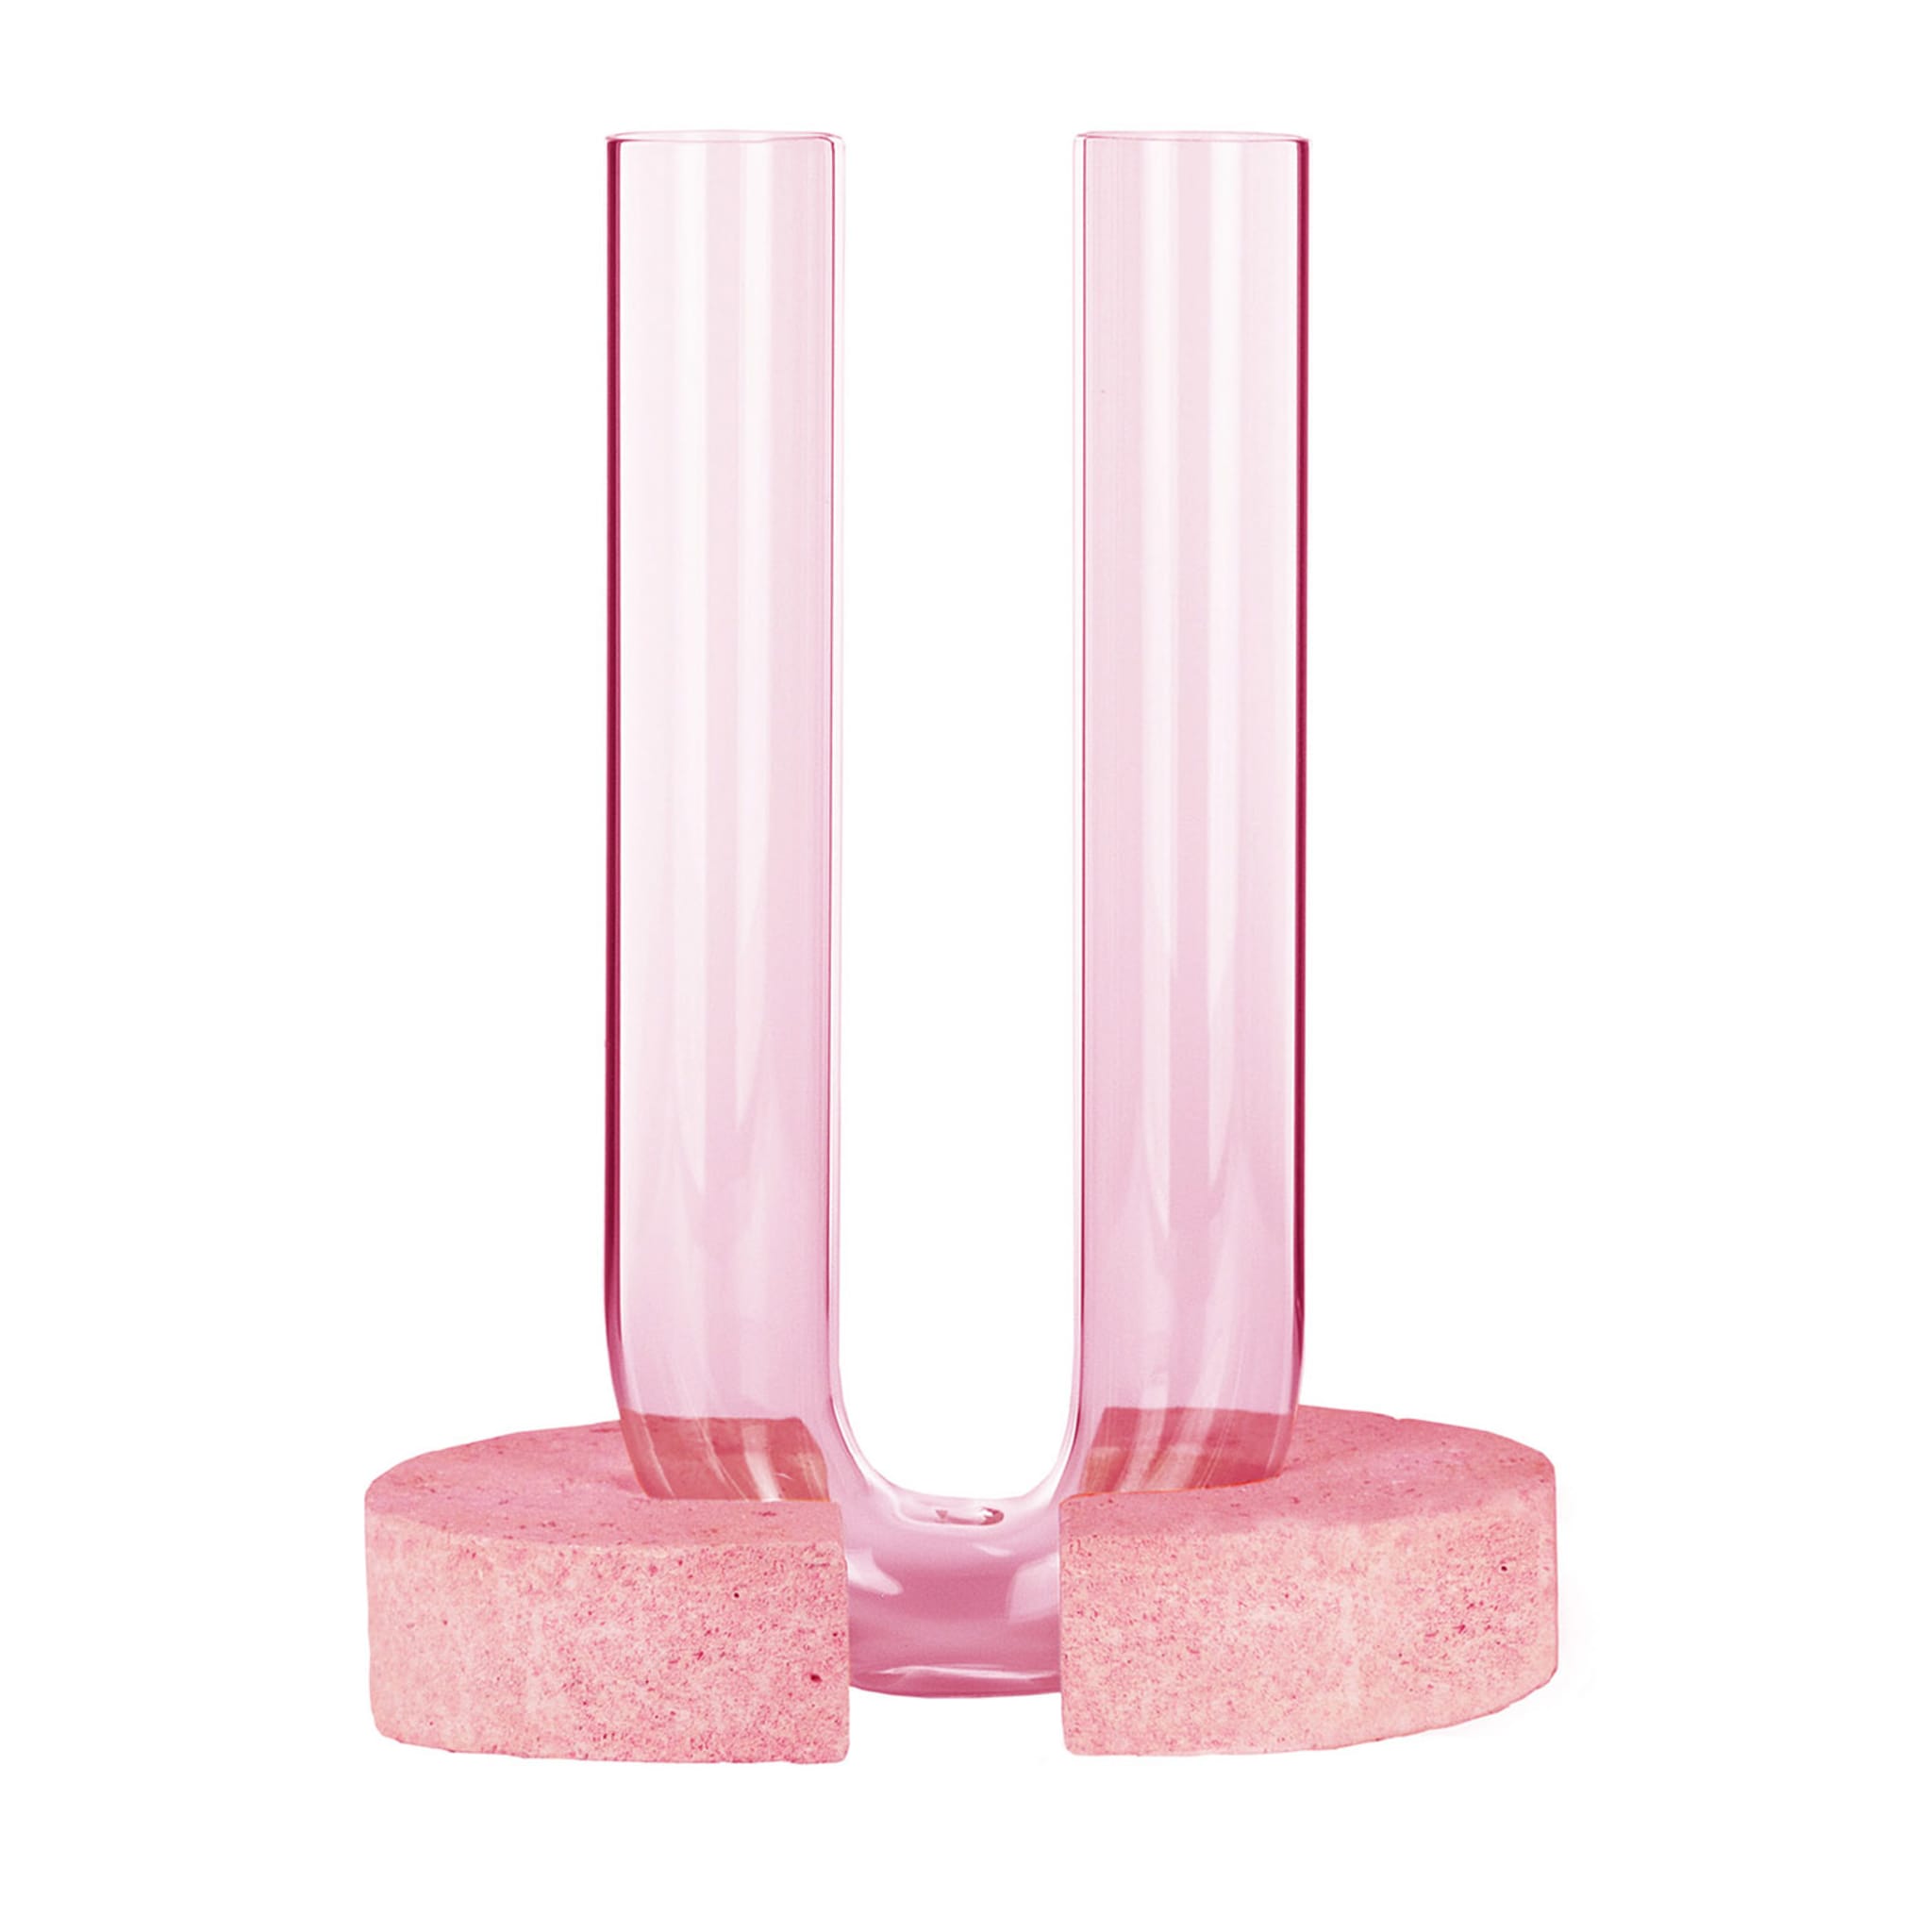 Cochlea Del Risveglio Soils Pink Vase - Main view